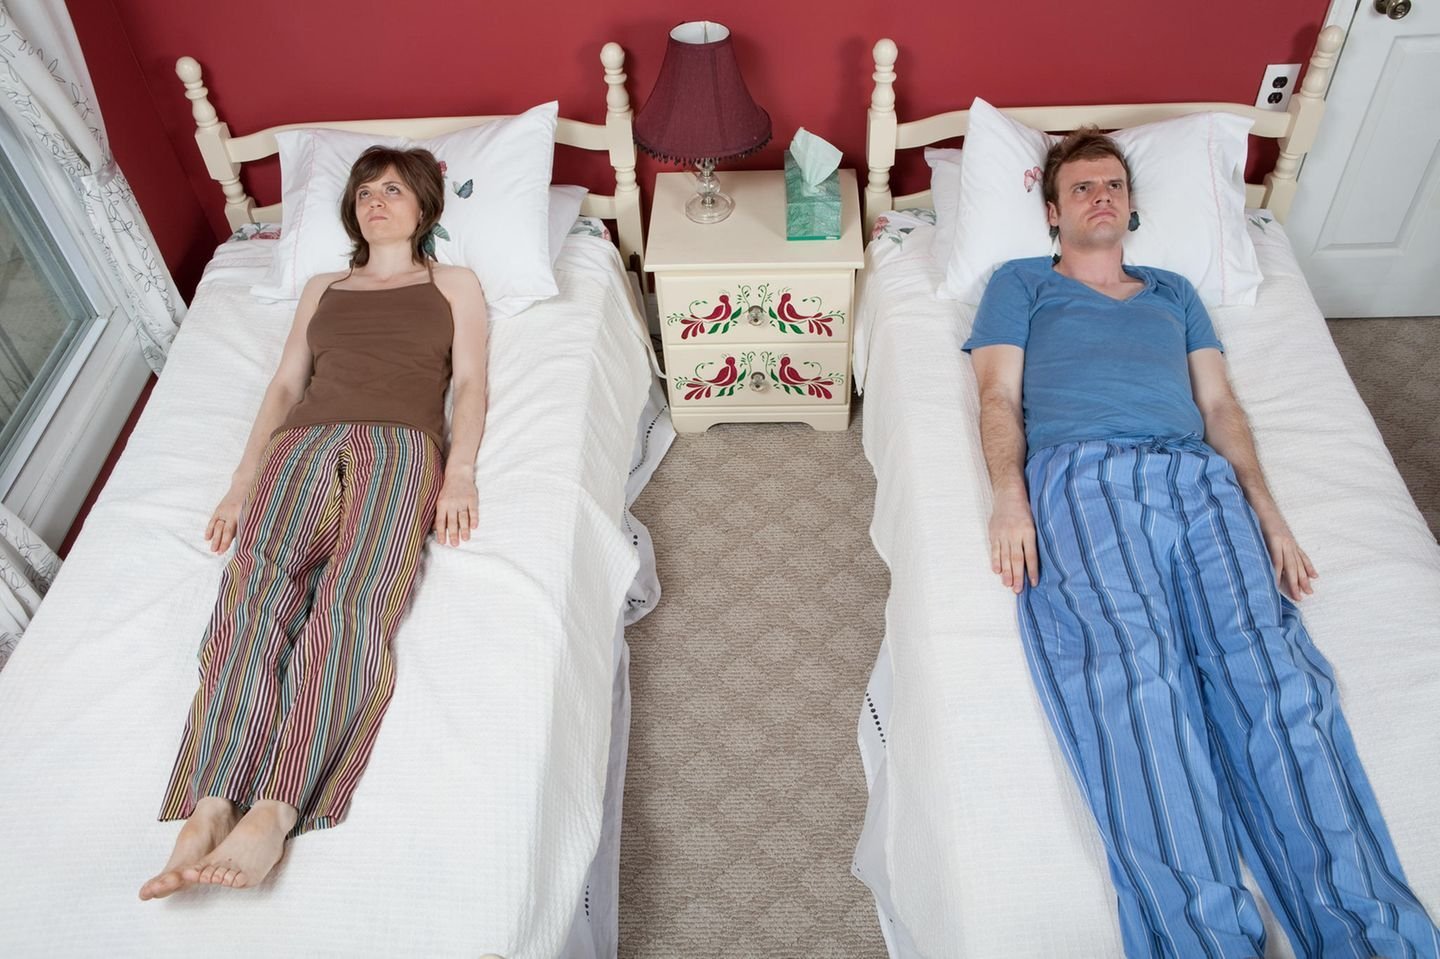 сон лежать с женой в кровати